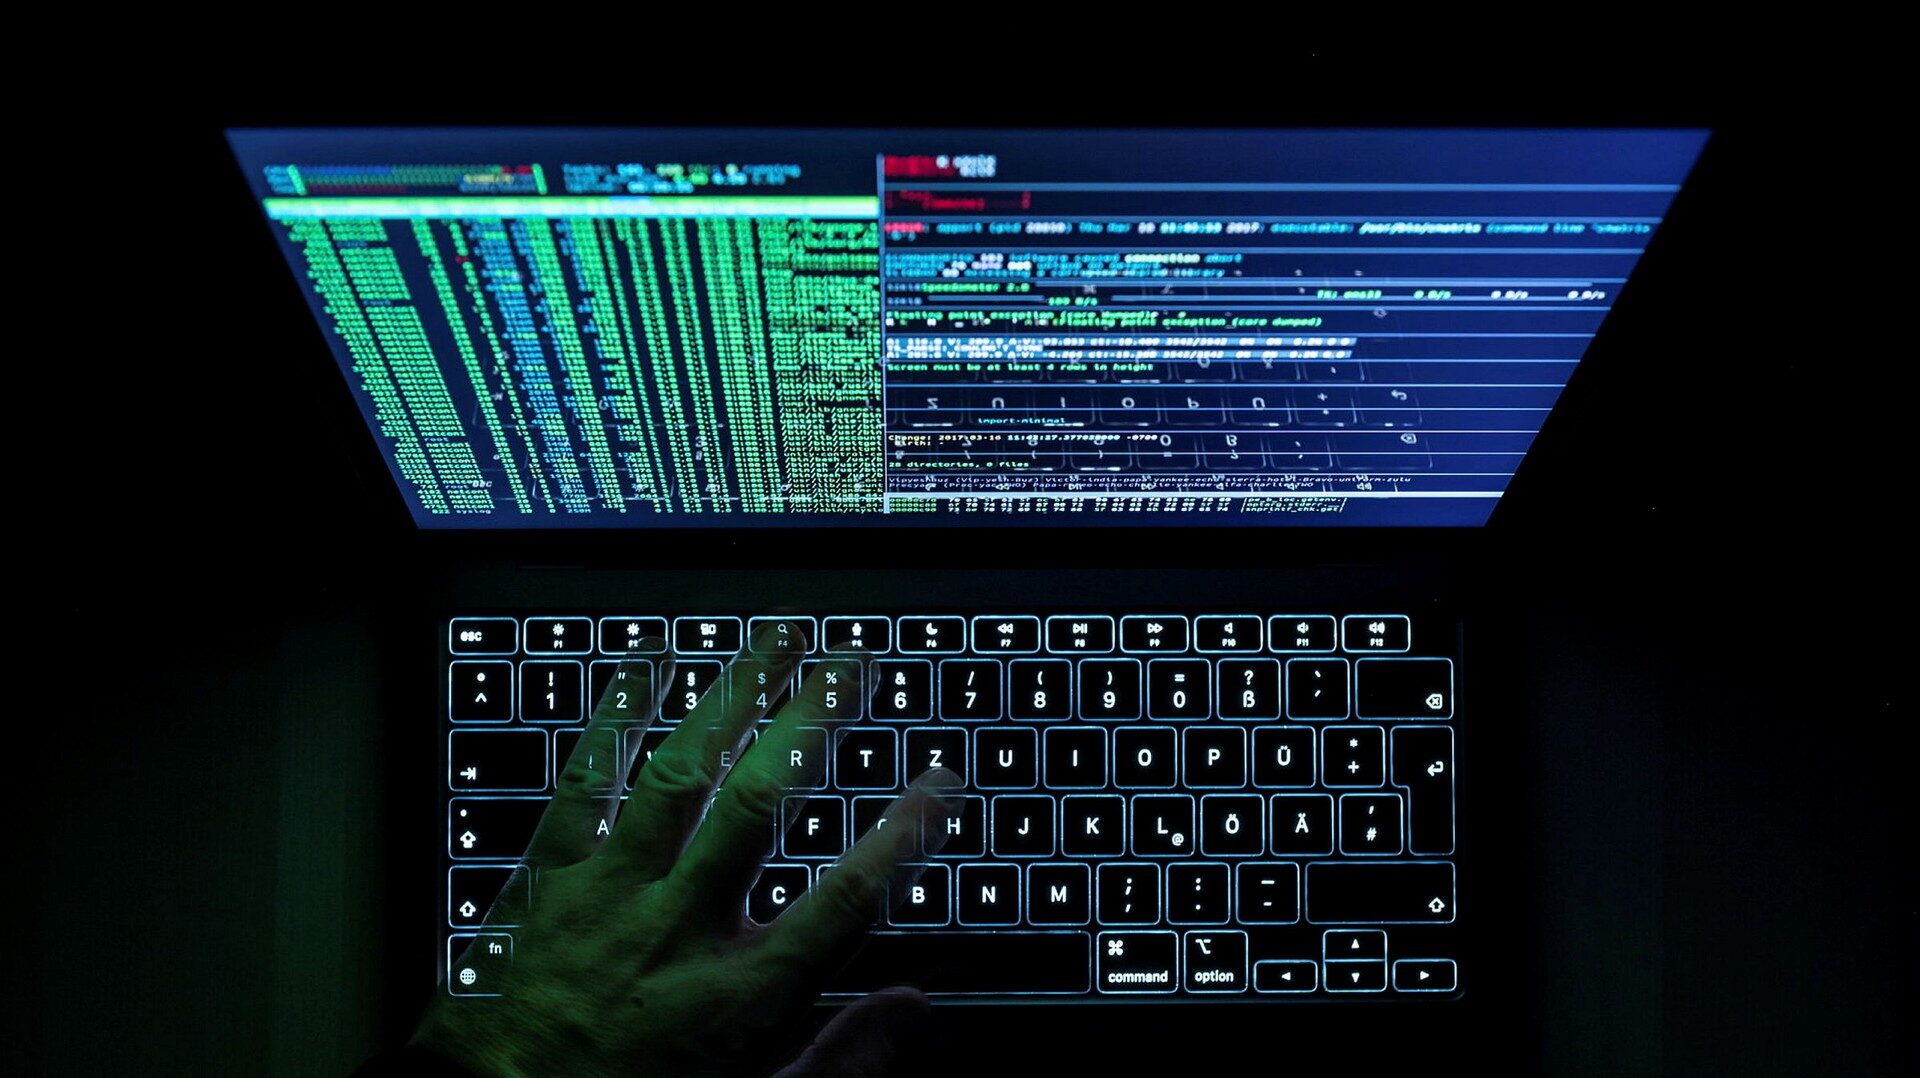 Rysk cyberattack mot Costa Rica - DN.SE - Dagens Nyheter